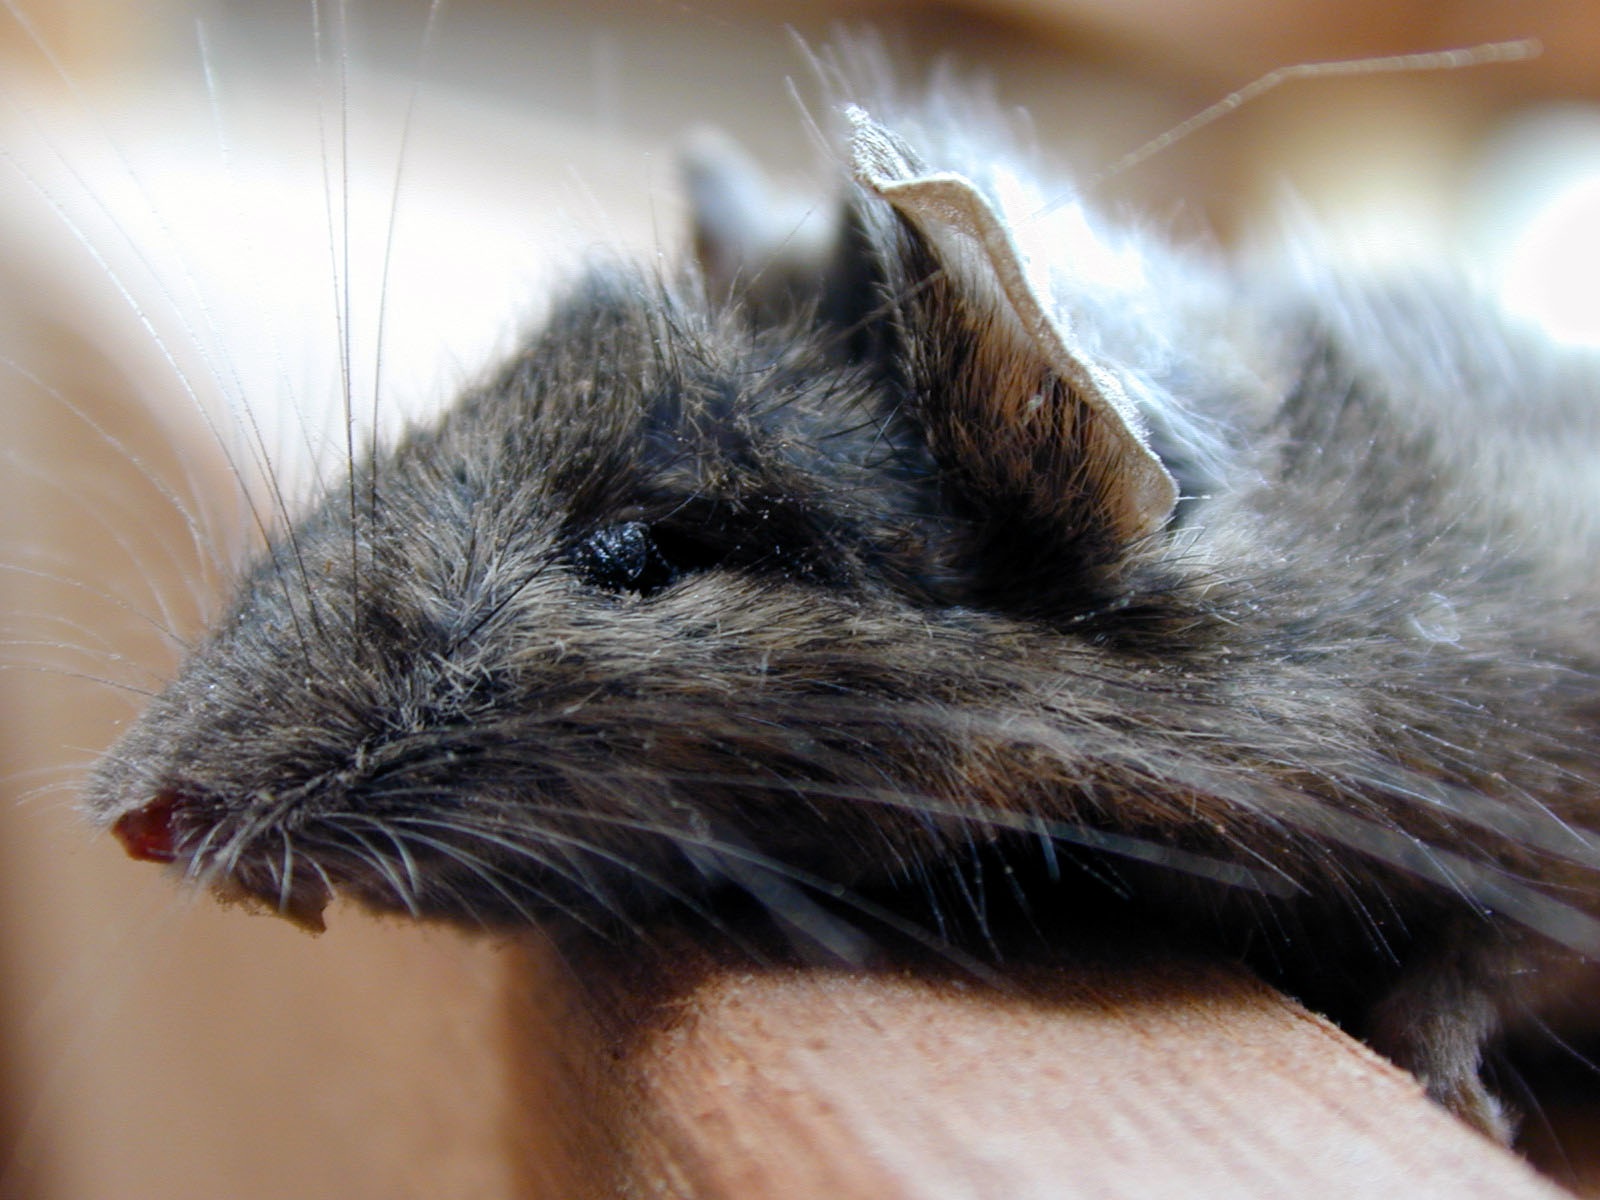 Los ratones muestran beneficios en su salud al utilizar los dos compuestos estudiados. Fuente: ImageAfter.